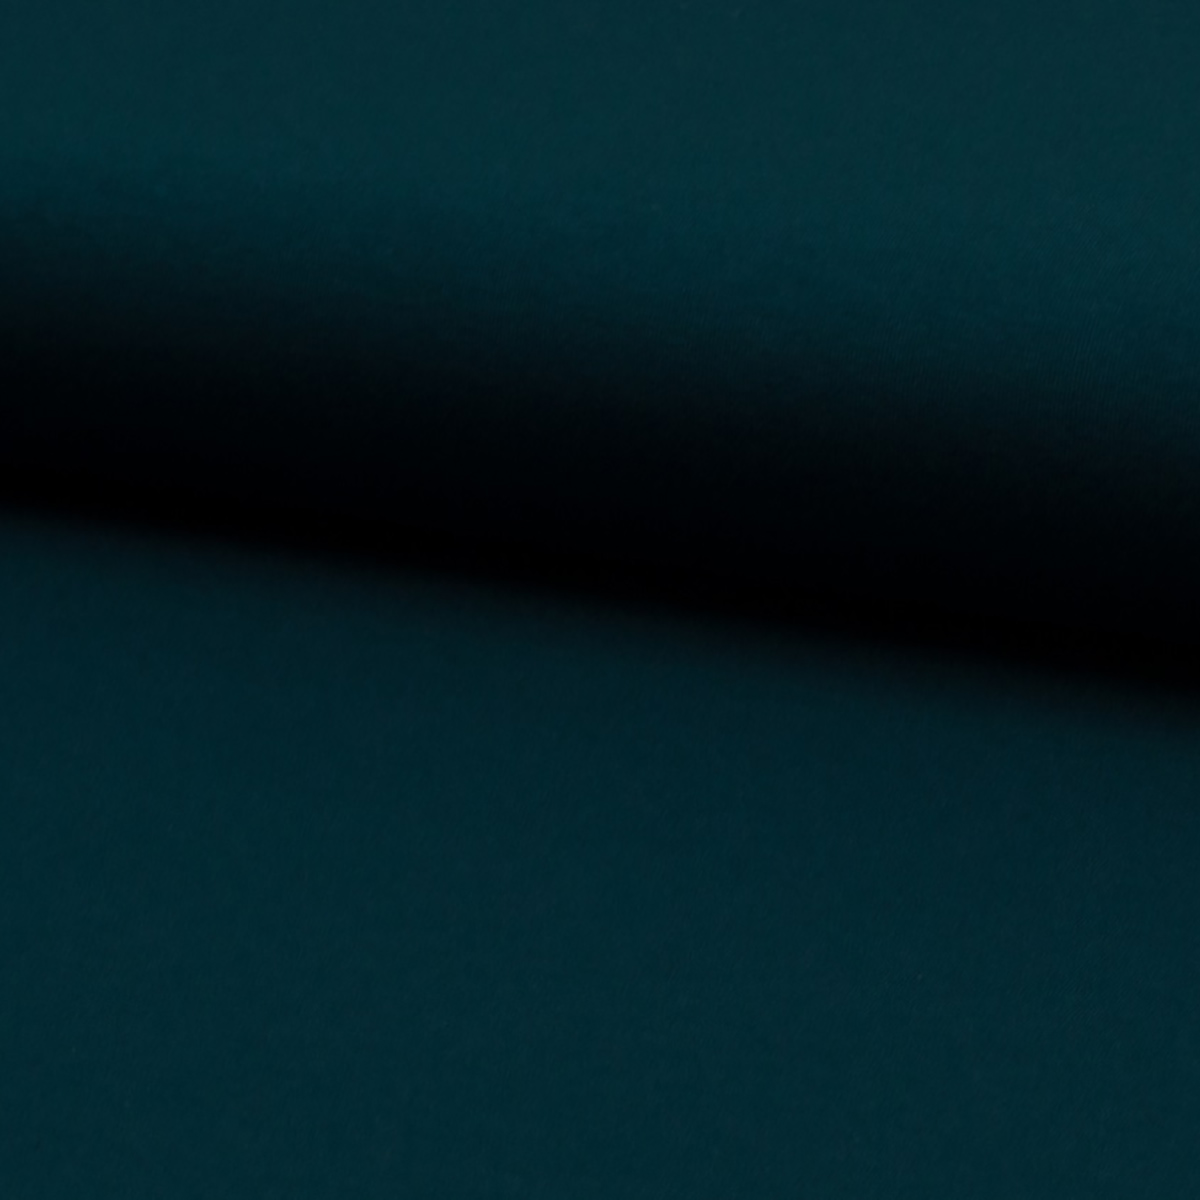 Elastik-Viskose-Jersey schwer dunkel türkisgrün, ÖkoTex-zertifiziert, 150-160cm, 250g/qm, 400 g/lfm  